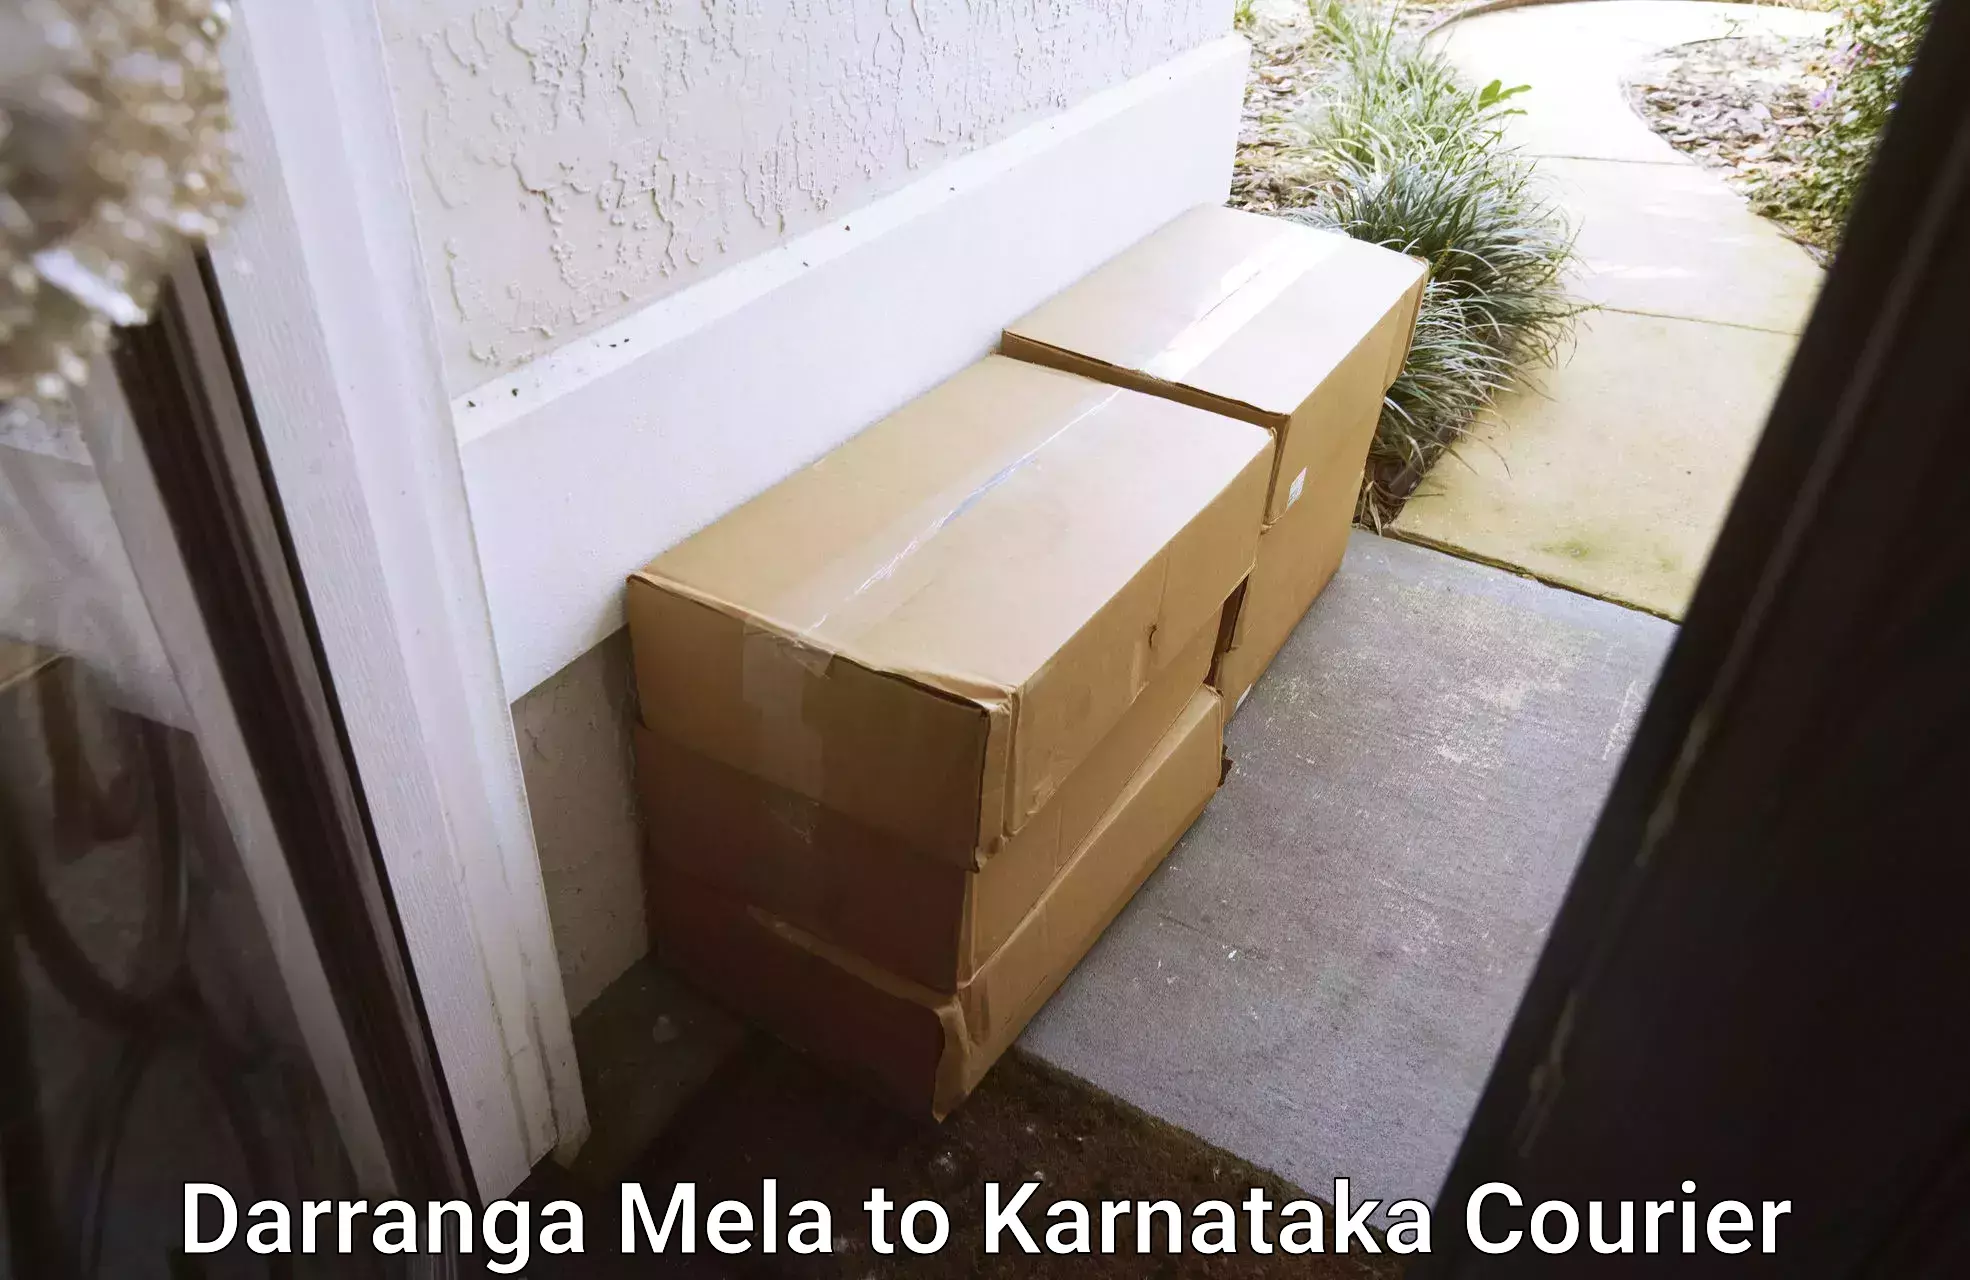 Innovative logistics solutions Darranga Mela to Kerur